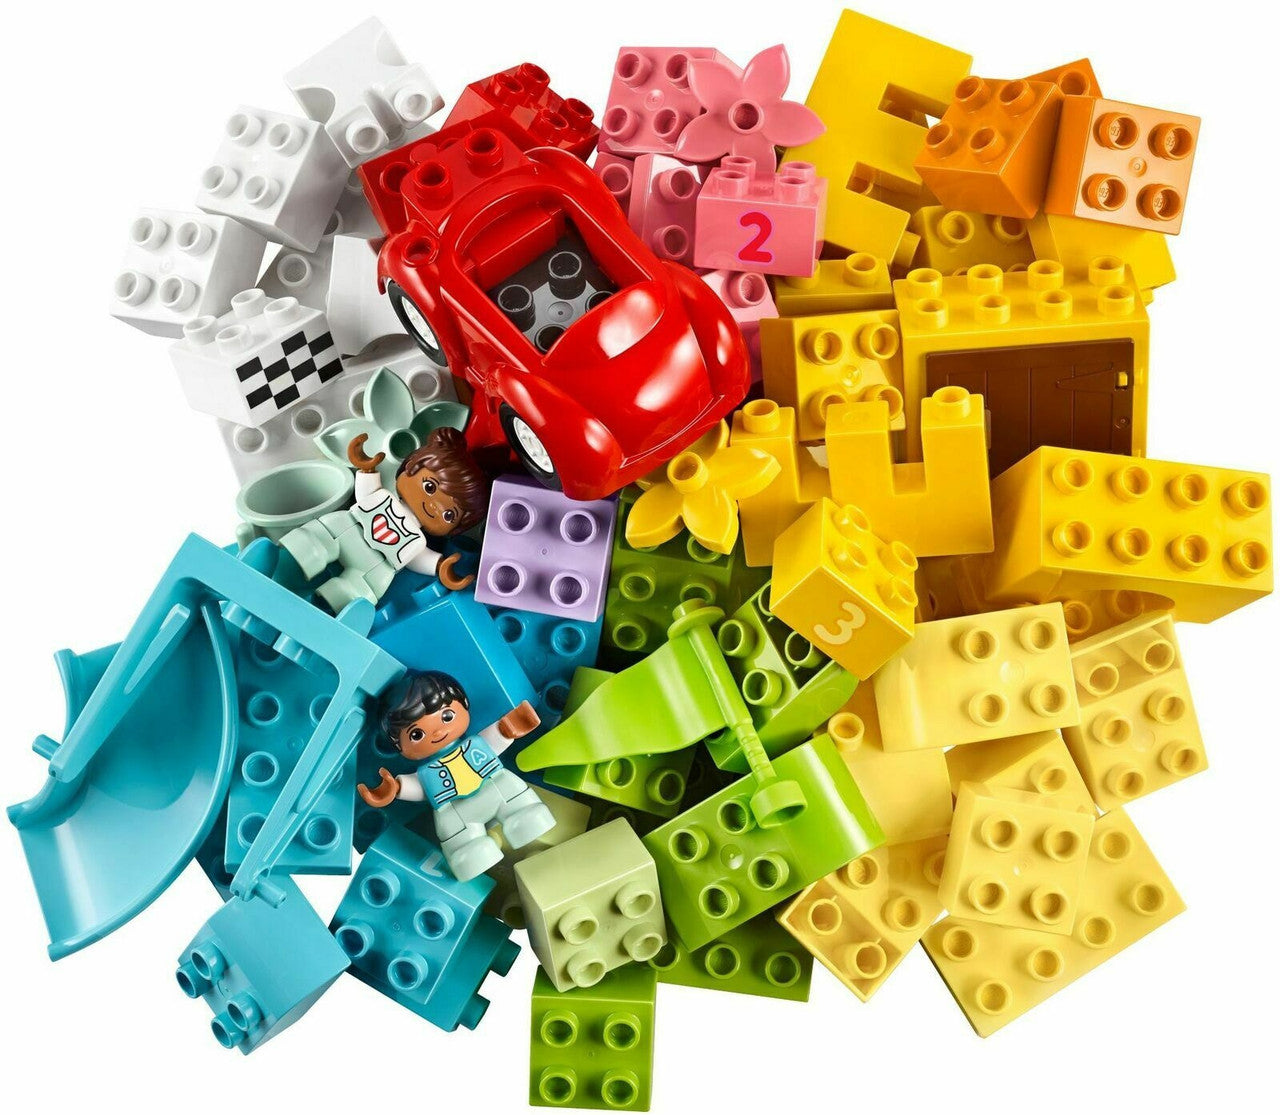 LEGO DUPLO Deluxe Brick Box 10914